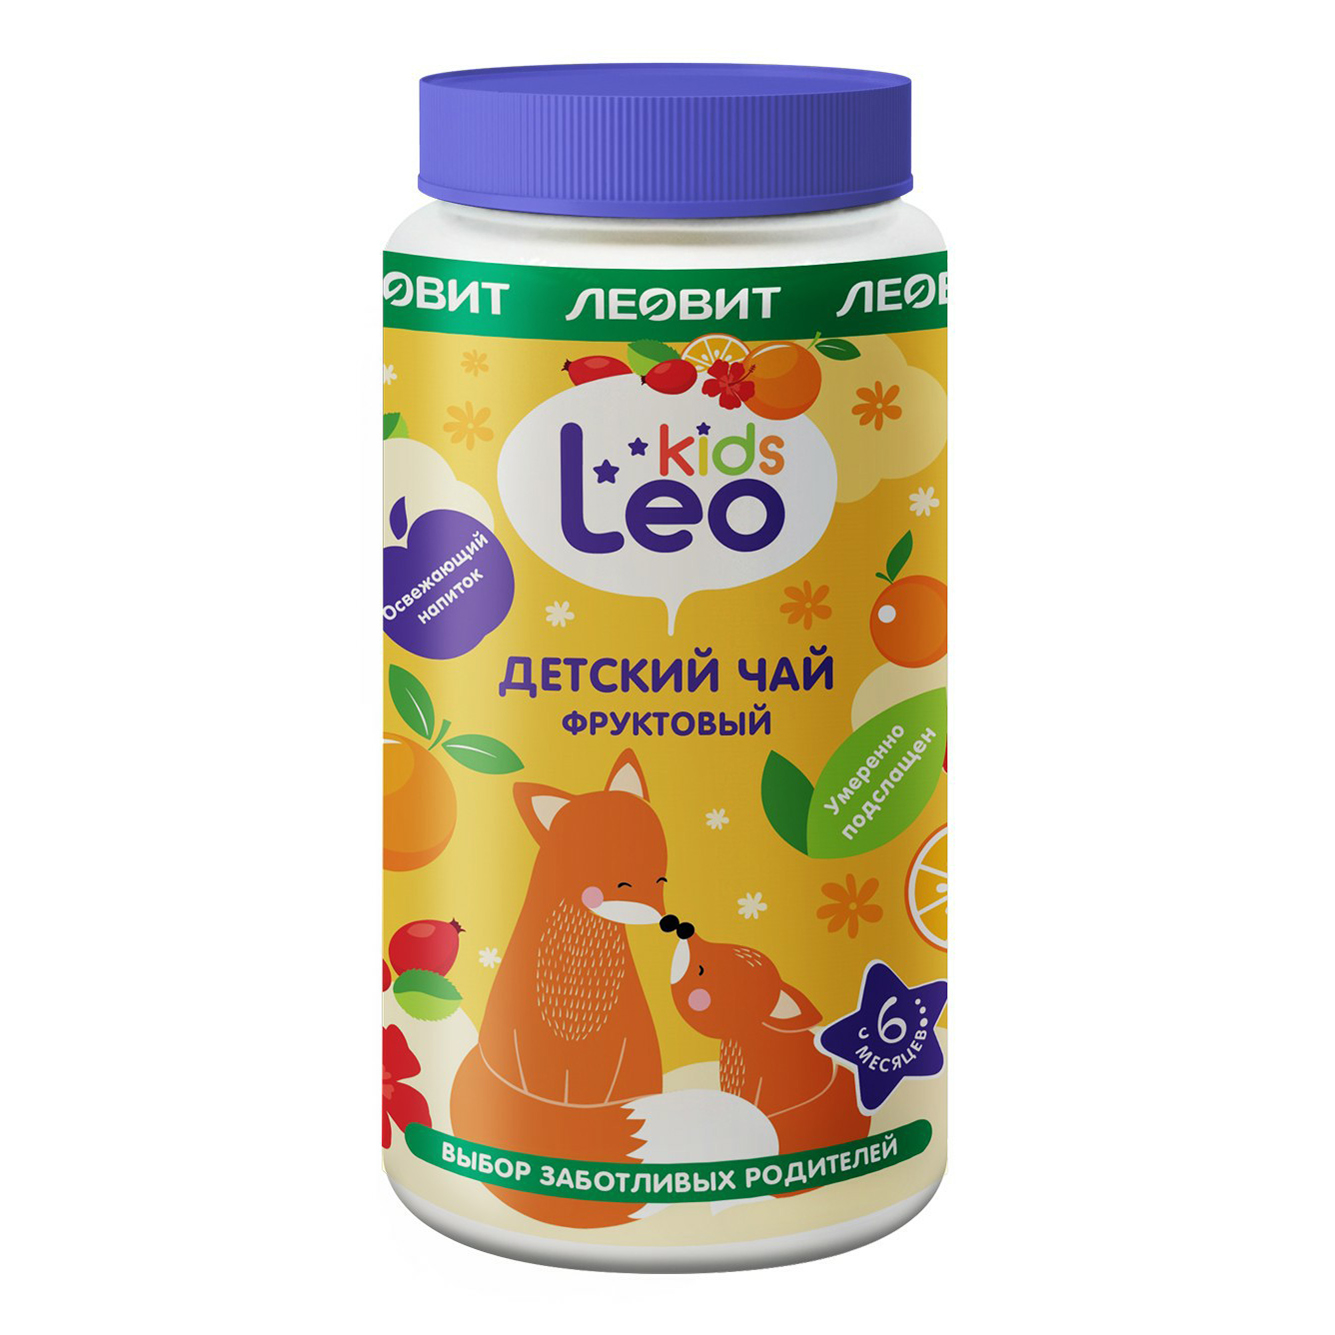 Чай детский Леовит Leo Kids Фруктовый гранулированный с 6 месяцев 200 г